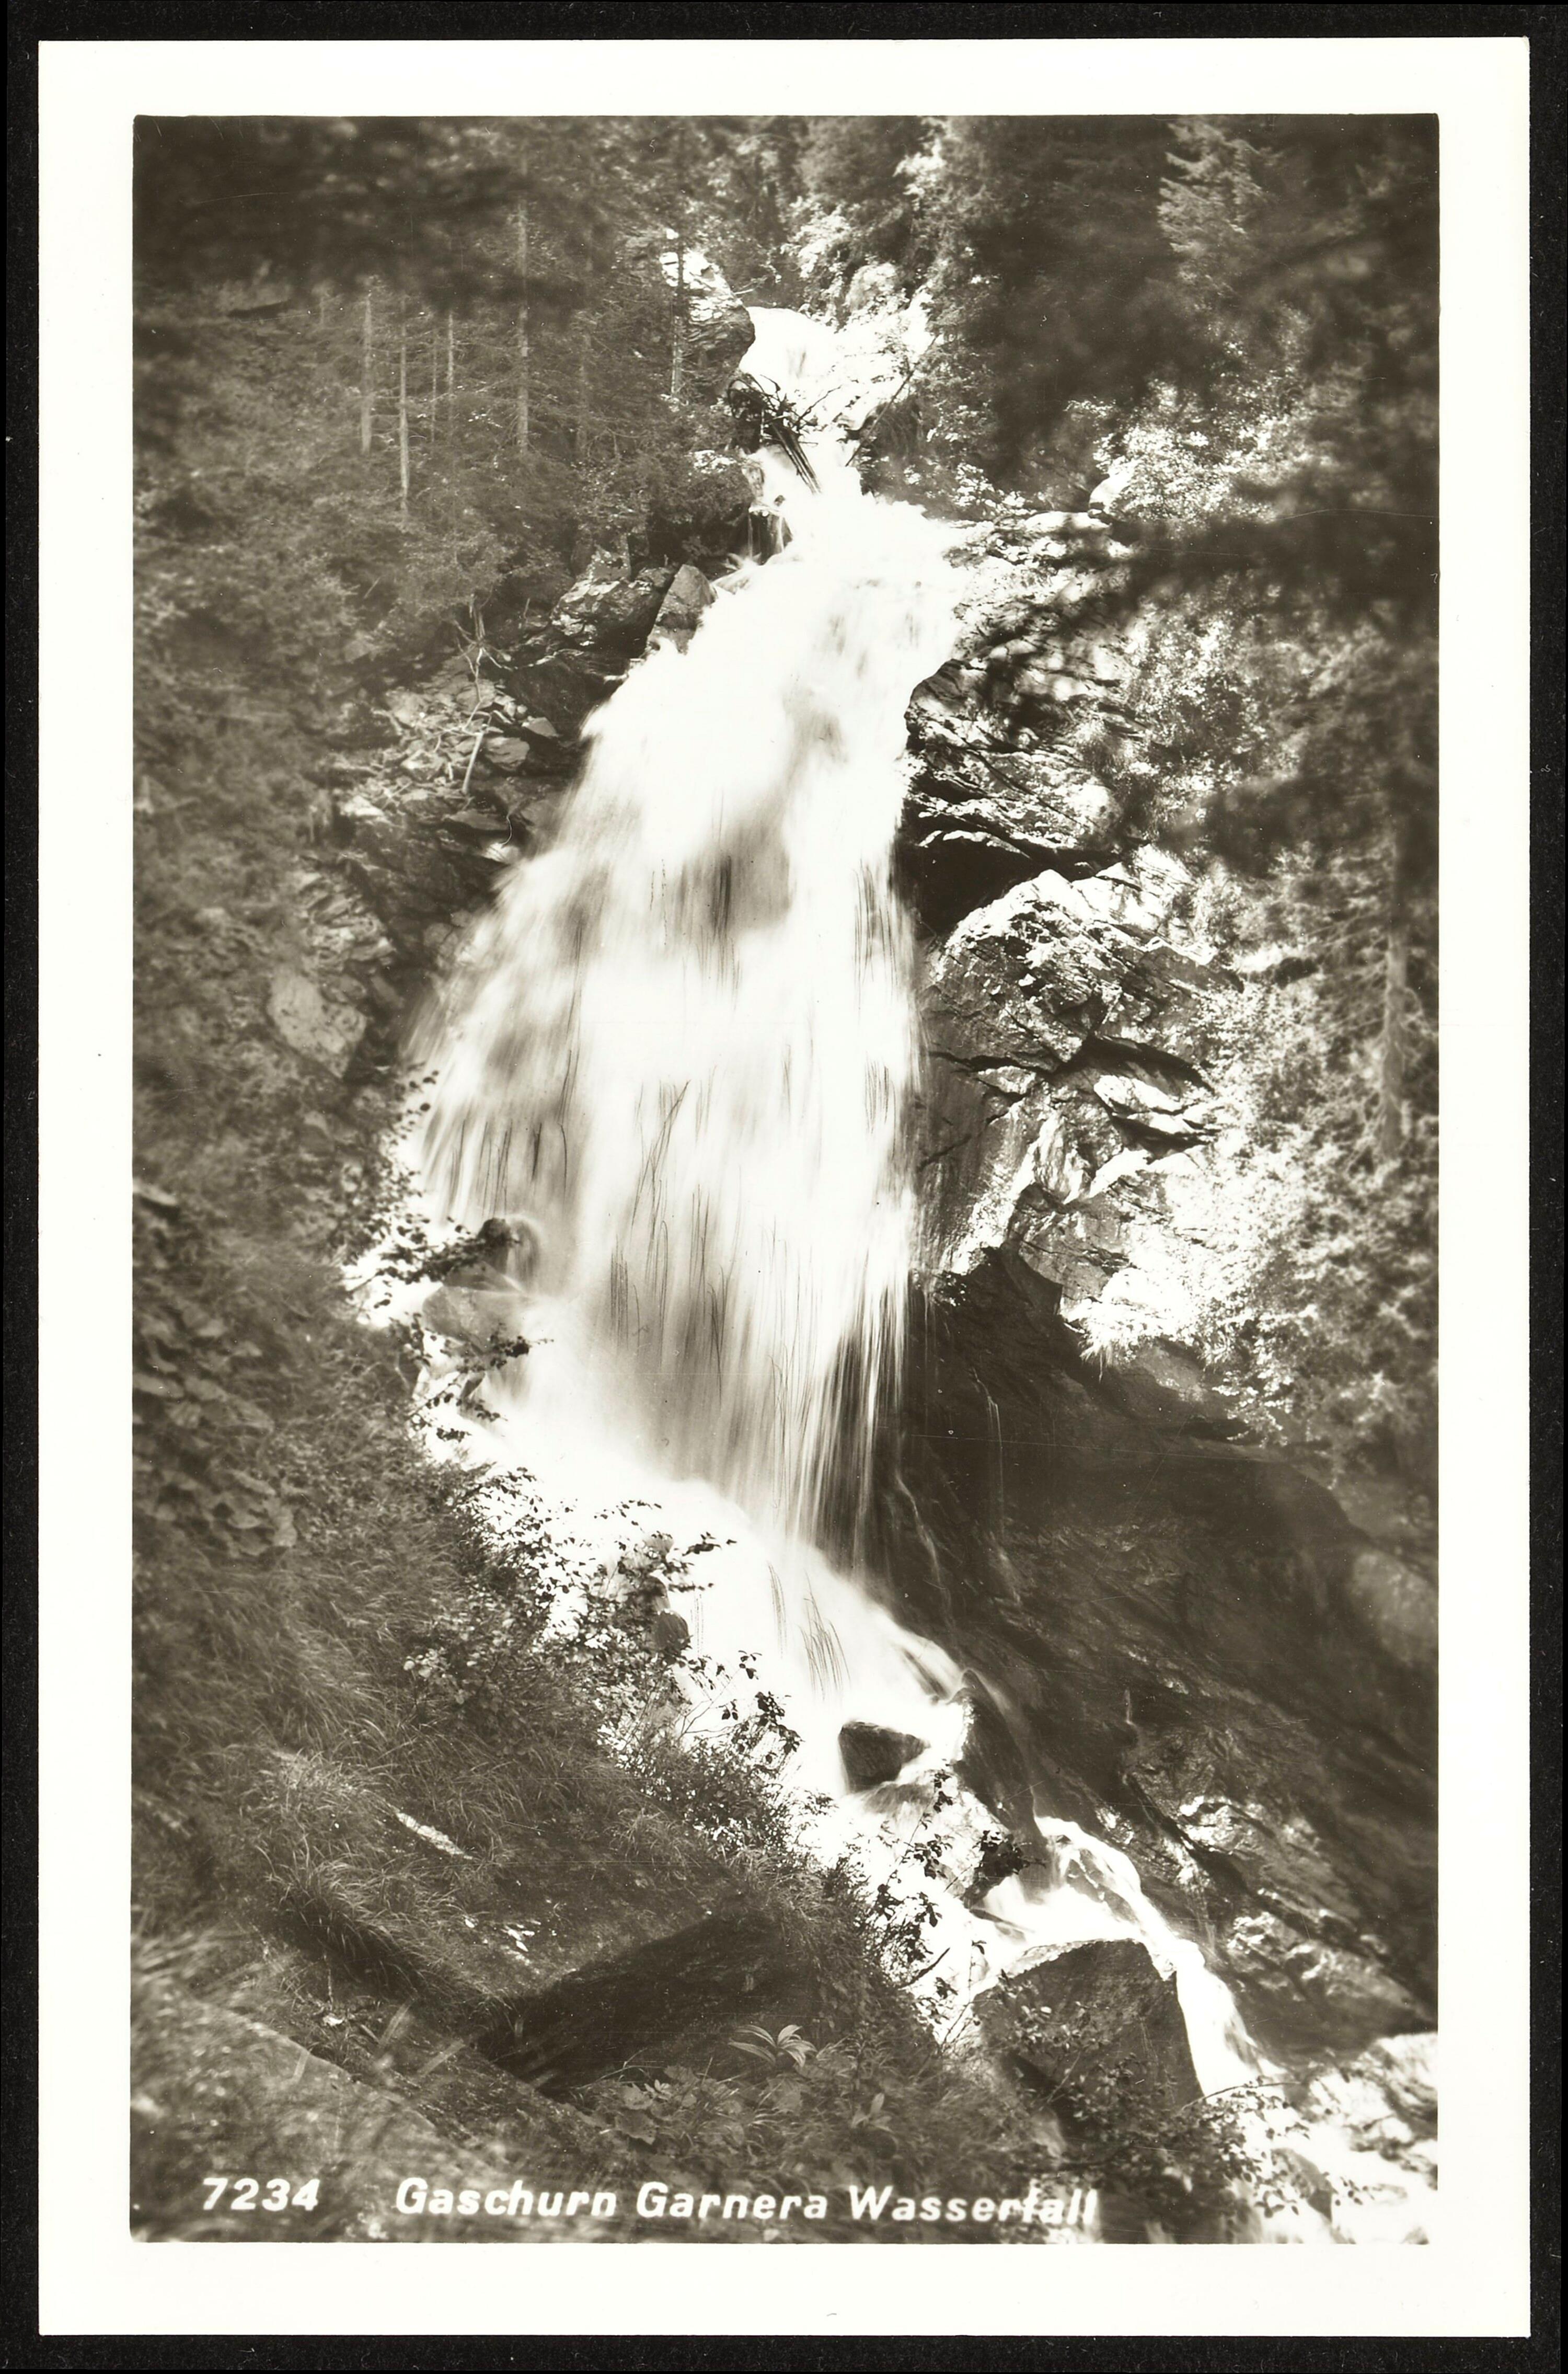 Gaschurn Garnera Wasserfall></div>


    <hr>
    <div class=